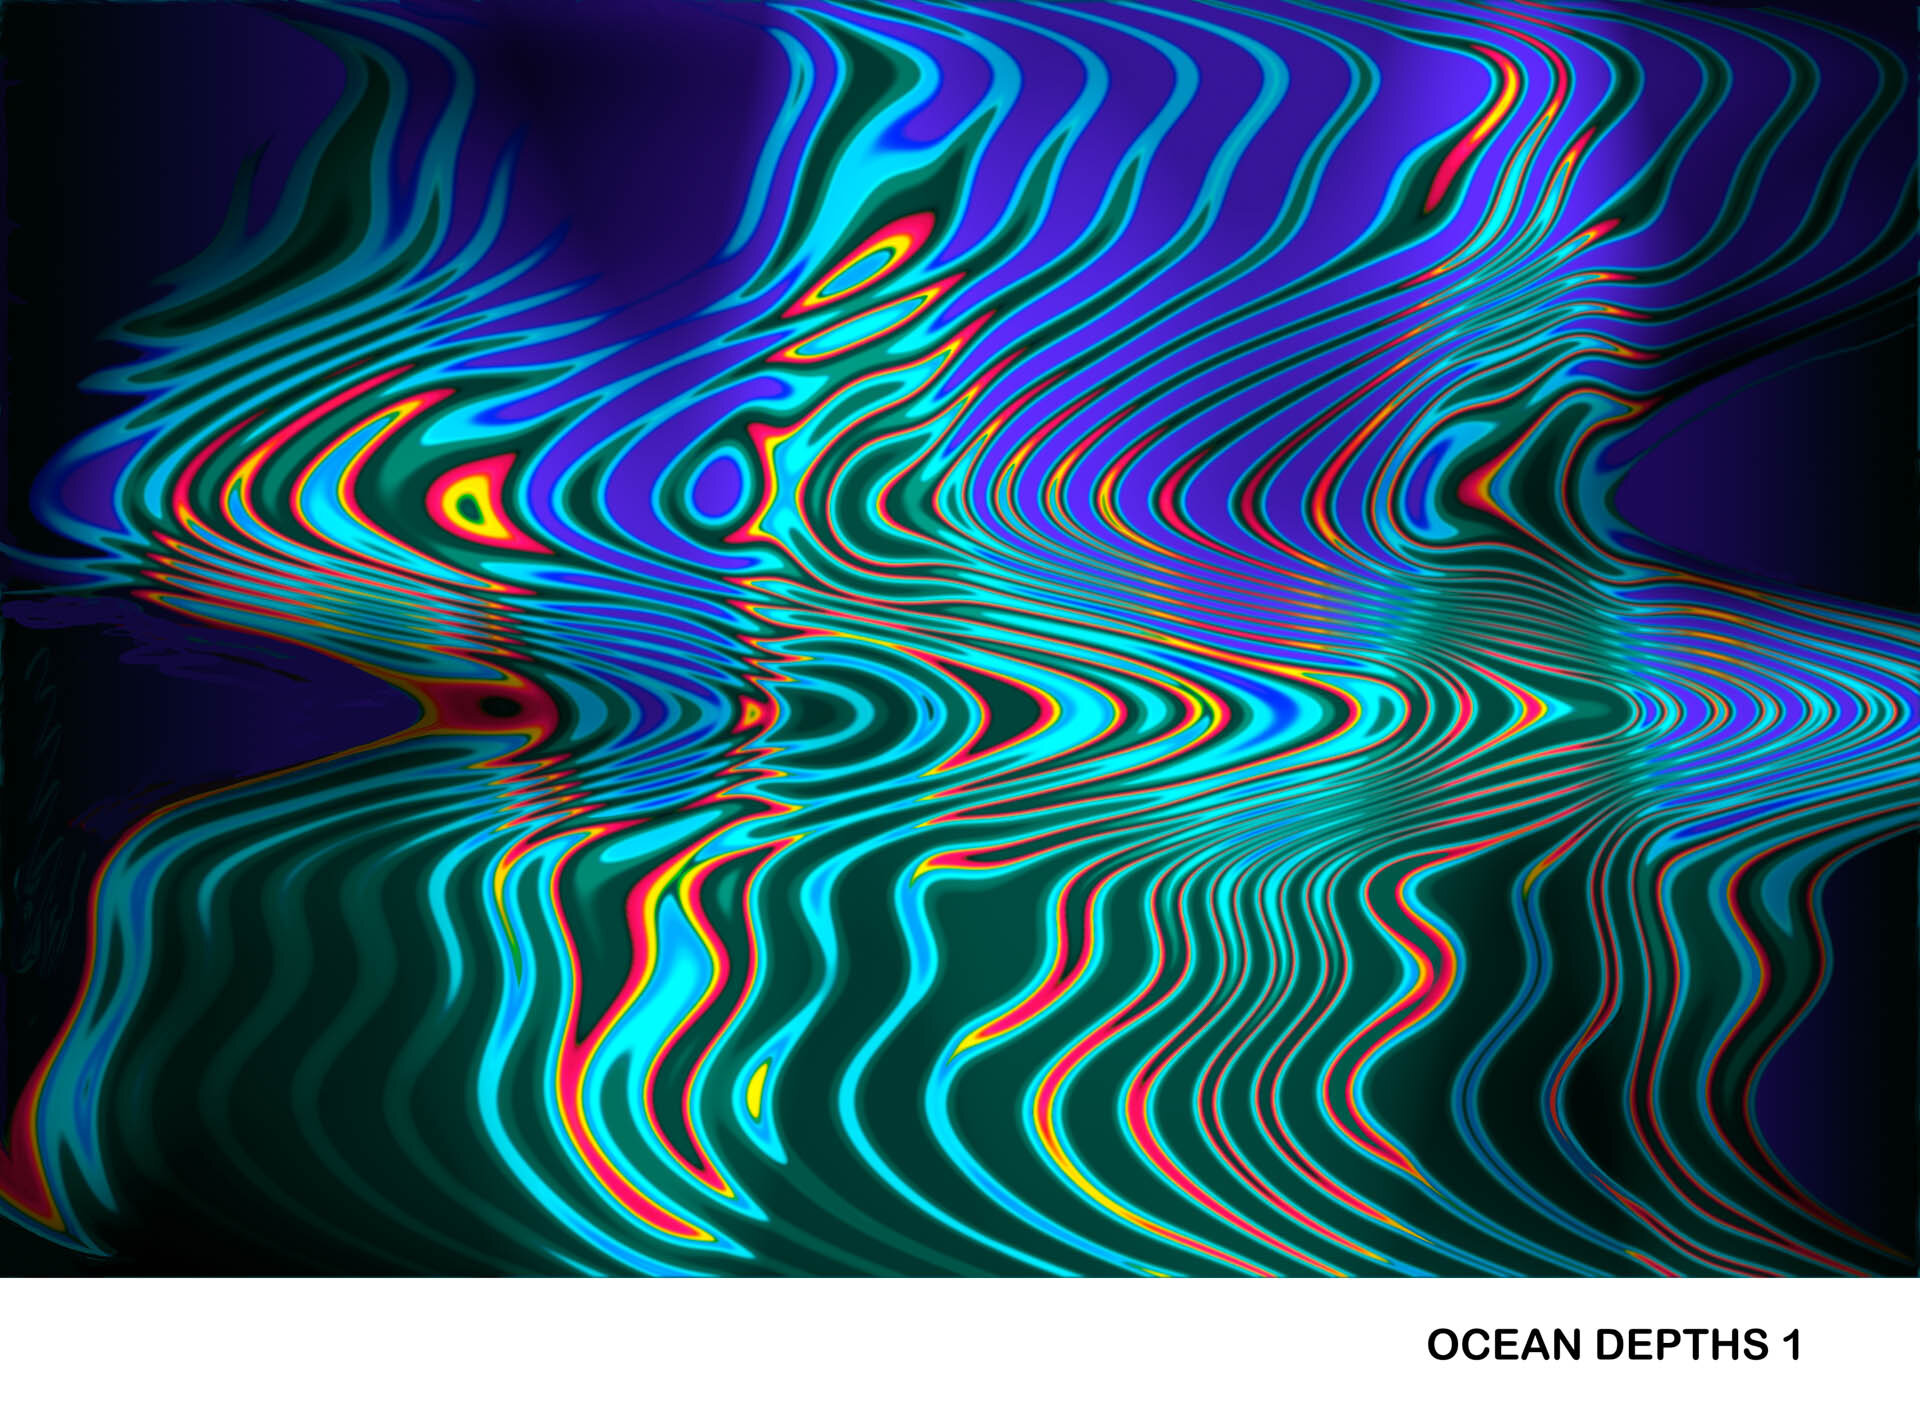 OCEAN DEPTHS 1 (BORDERED) Titled.jpg